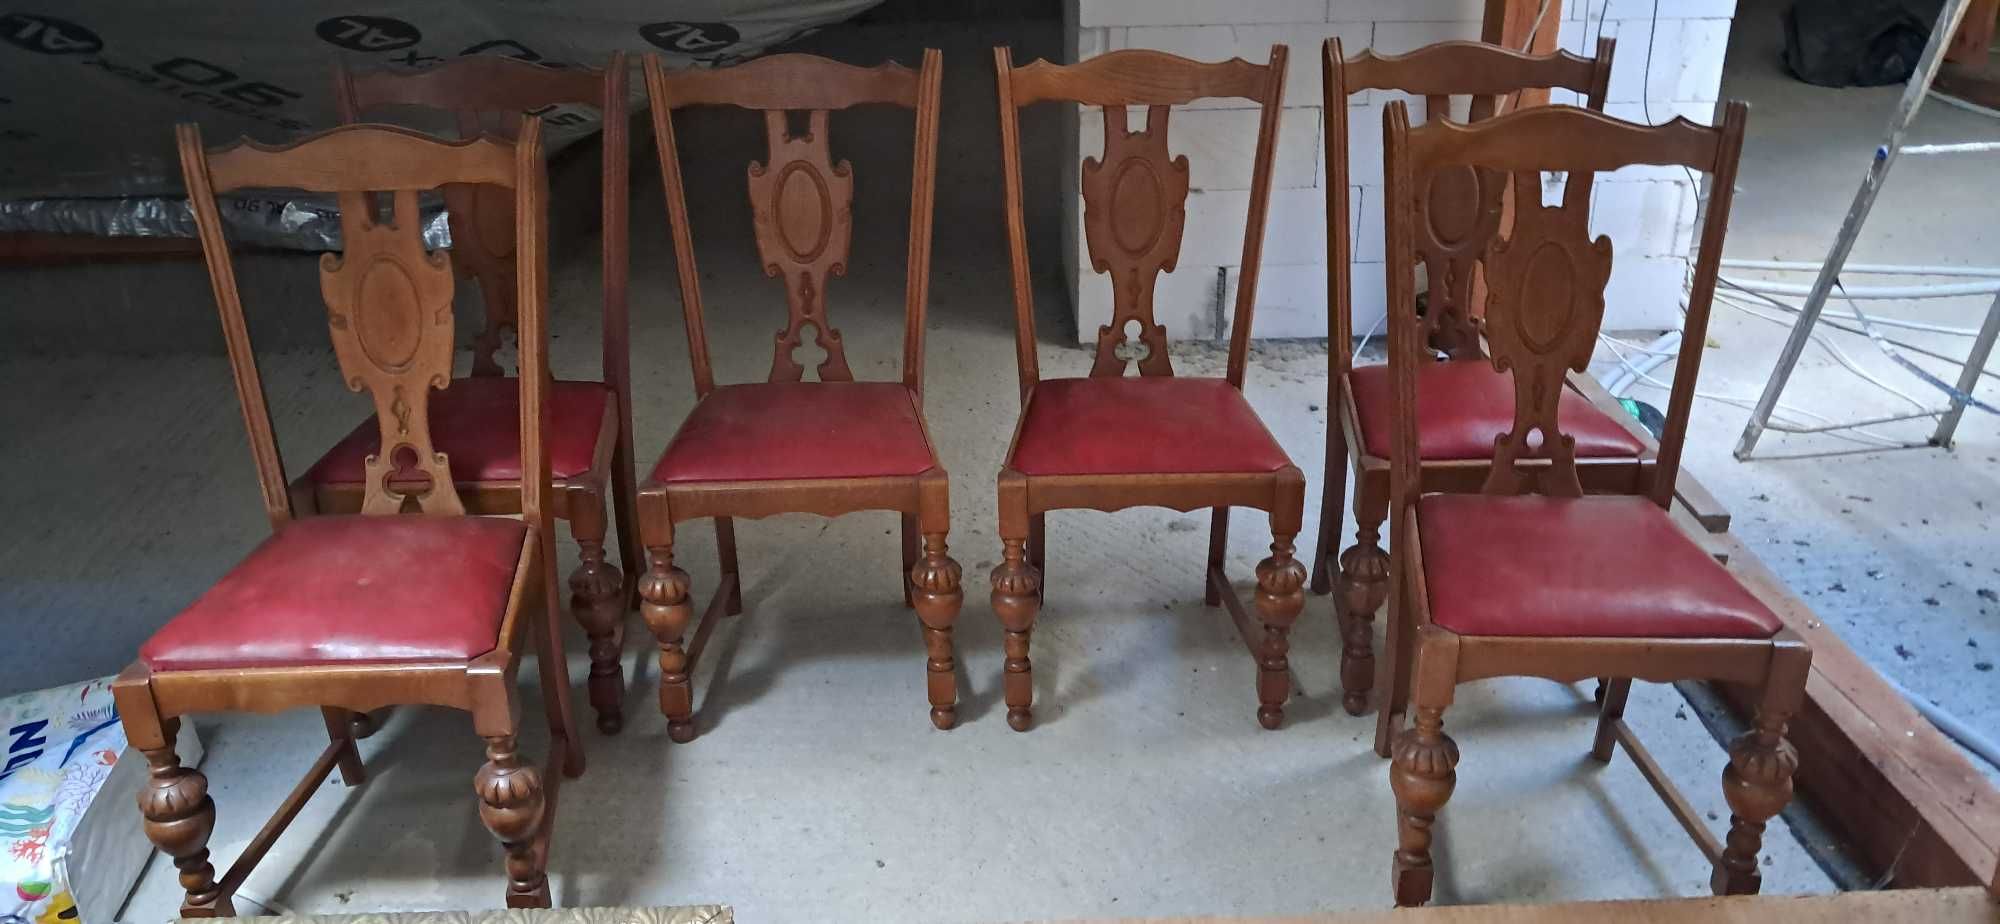 krzesła dębowe 8 sztuk . Stabile w bardzo dobrym stanie .